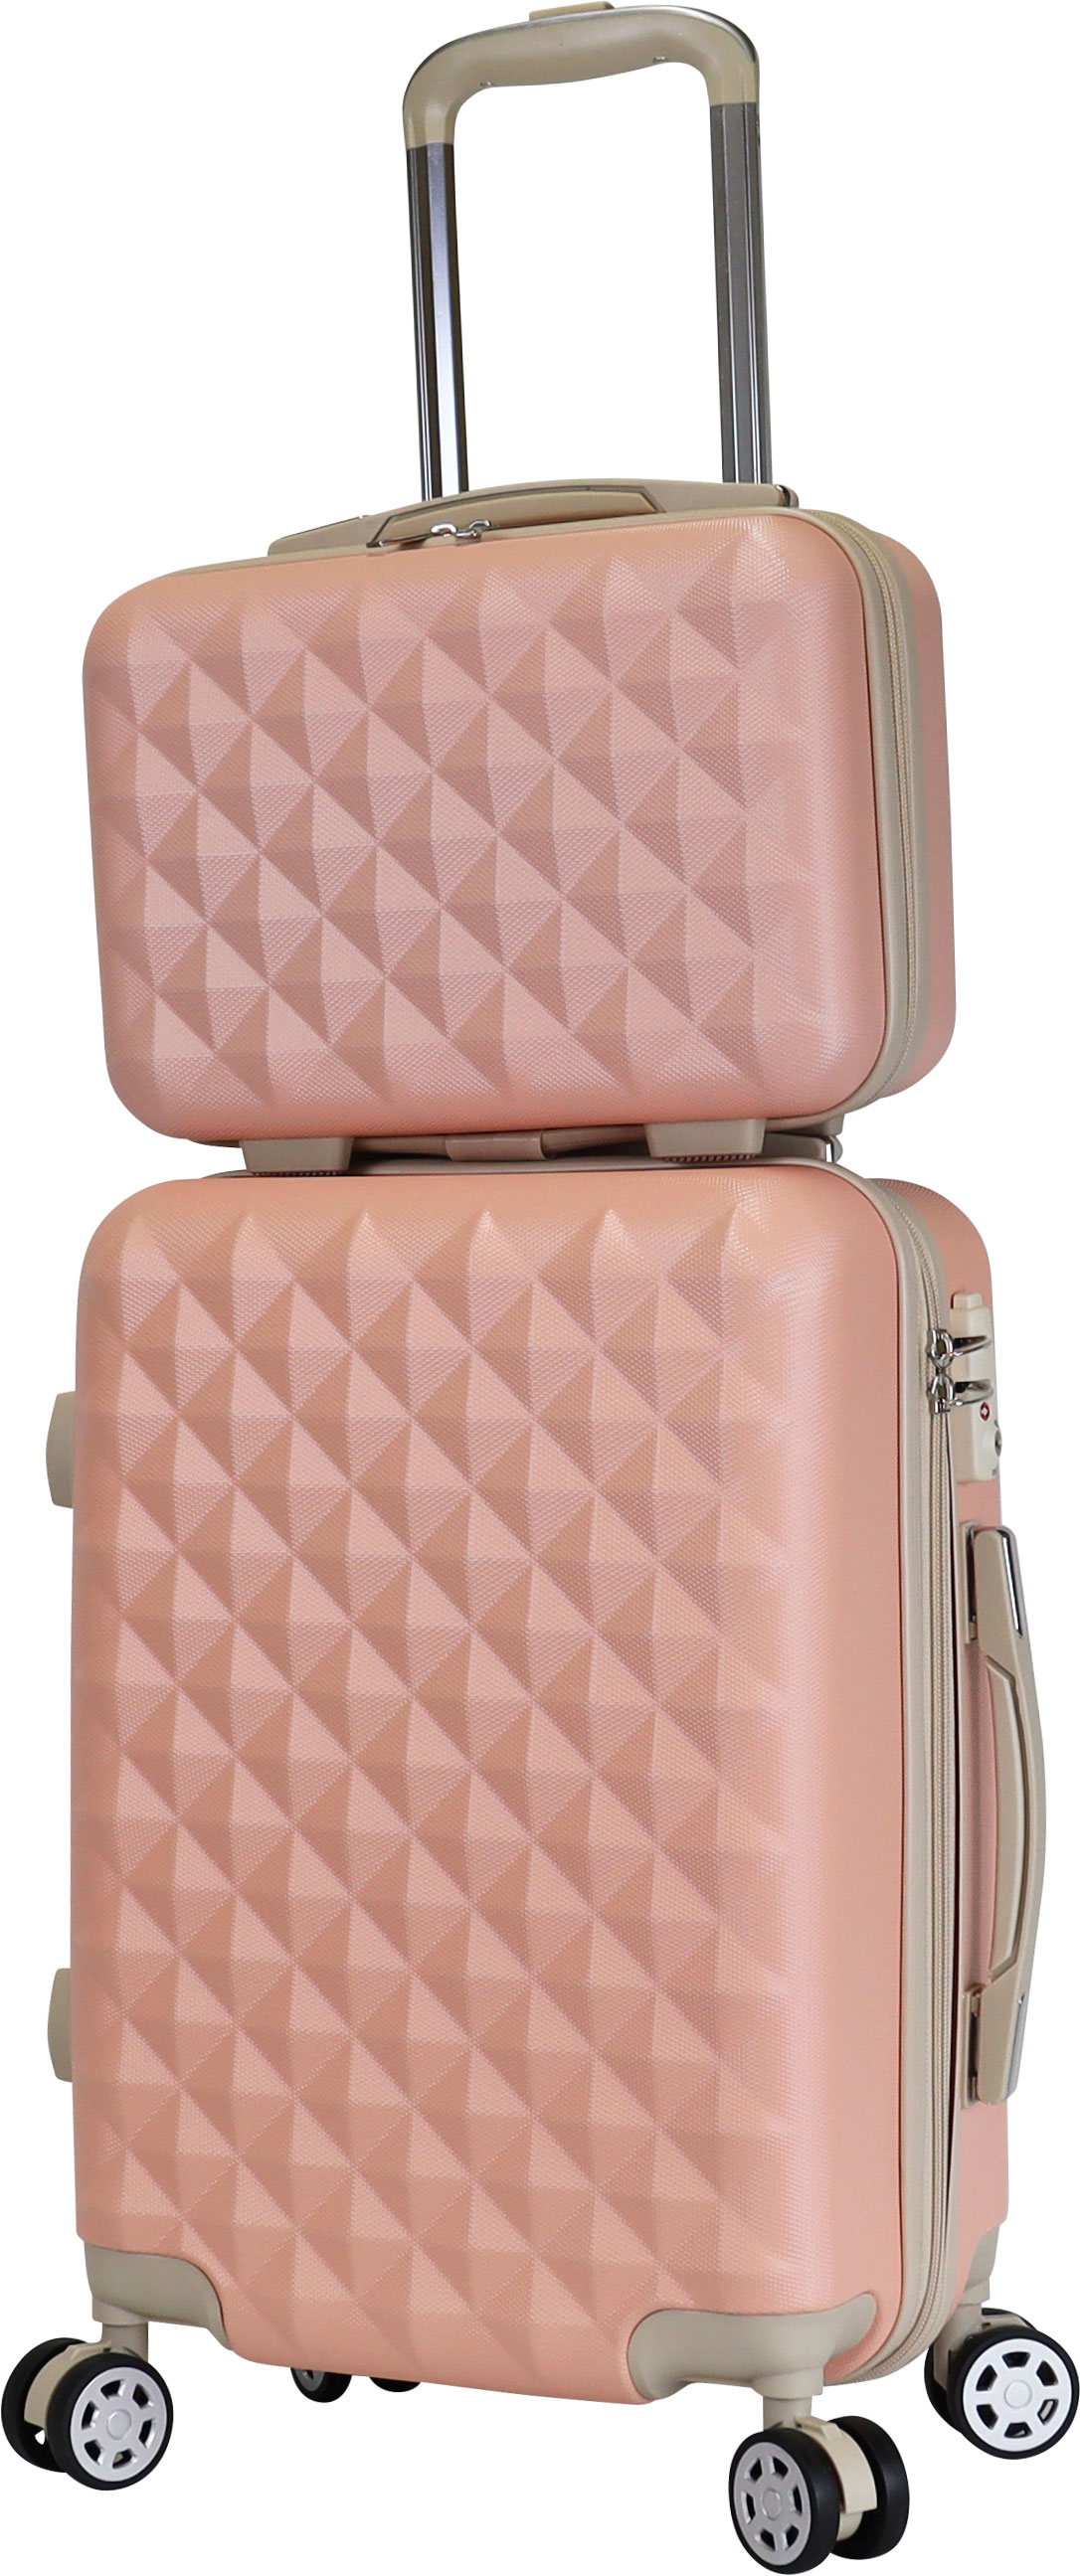 信用 スーツケース おすすめ 機内持ち込み キャリーバック basilo-012 ミニトランクセット 小型 おしゃれ TSA SSサイズ キルト風  かわいい キャリーケース 軽量 スーツケース、キャリーバッグ